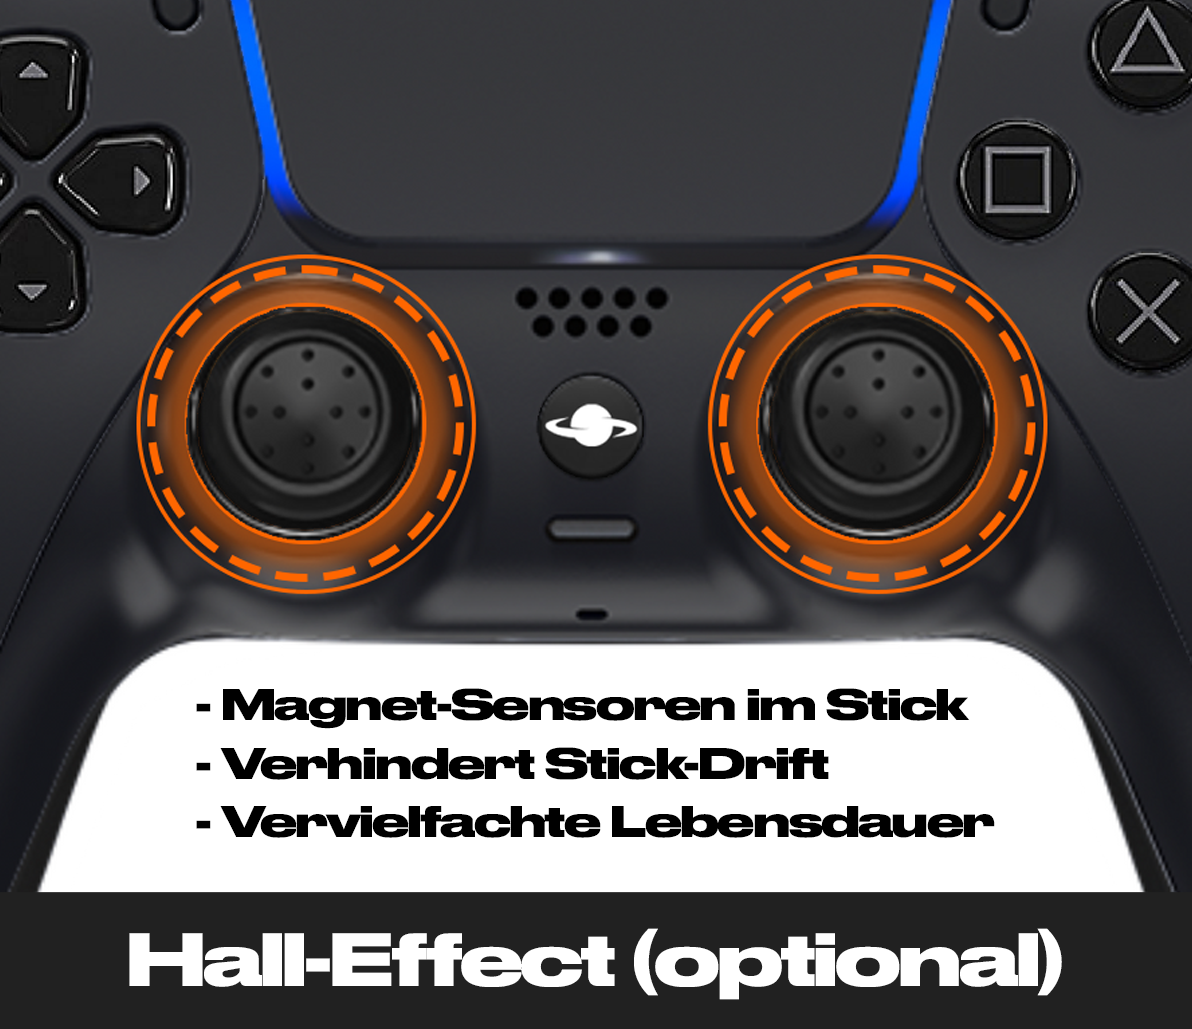 PS5 Custom Controller 'Transparent Blau'